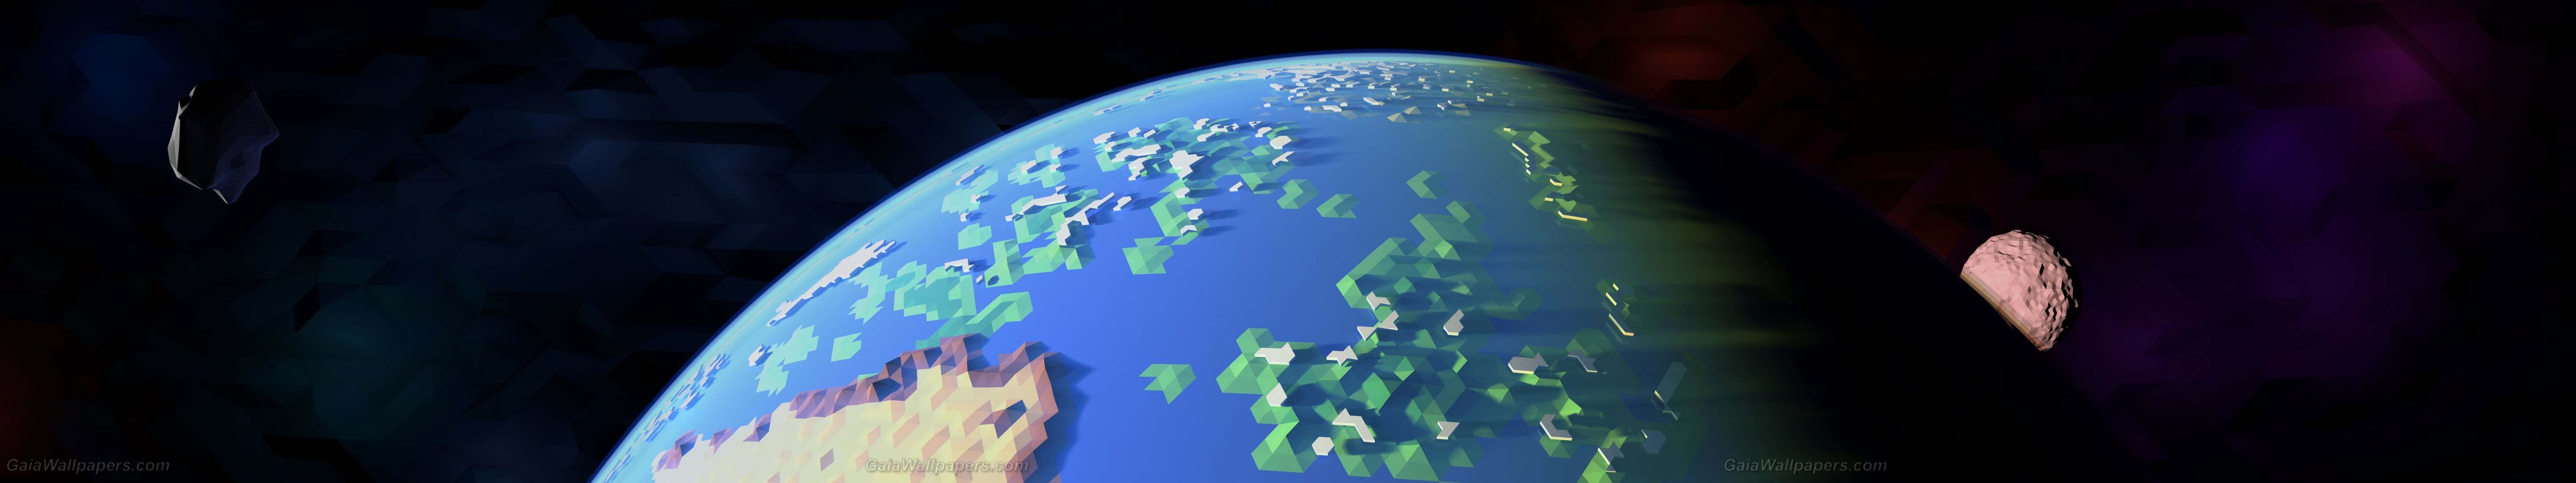 Terre polygonale dans l'espace - Fonds d'écran gratuits